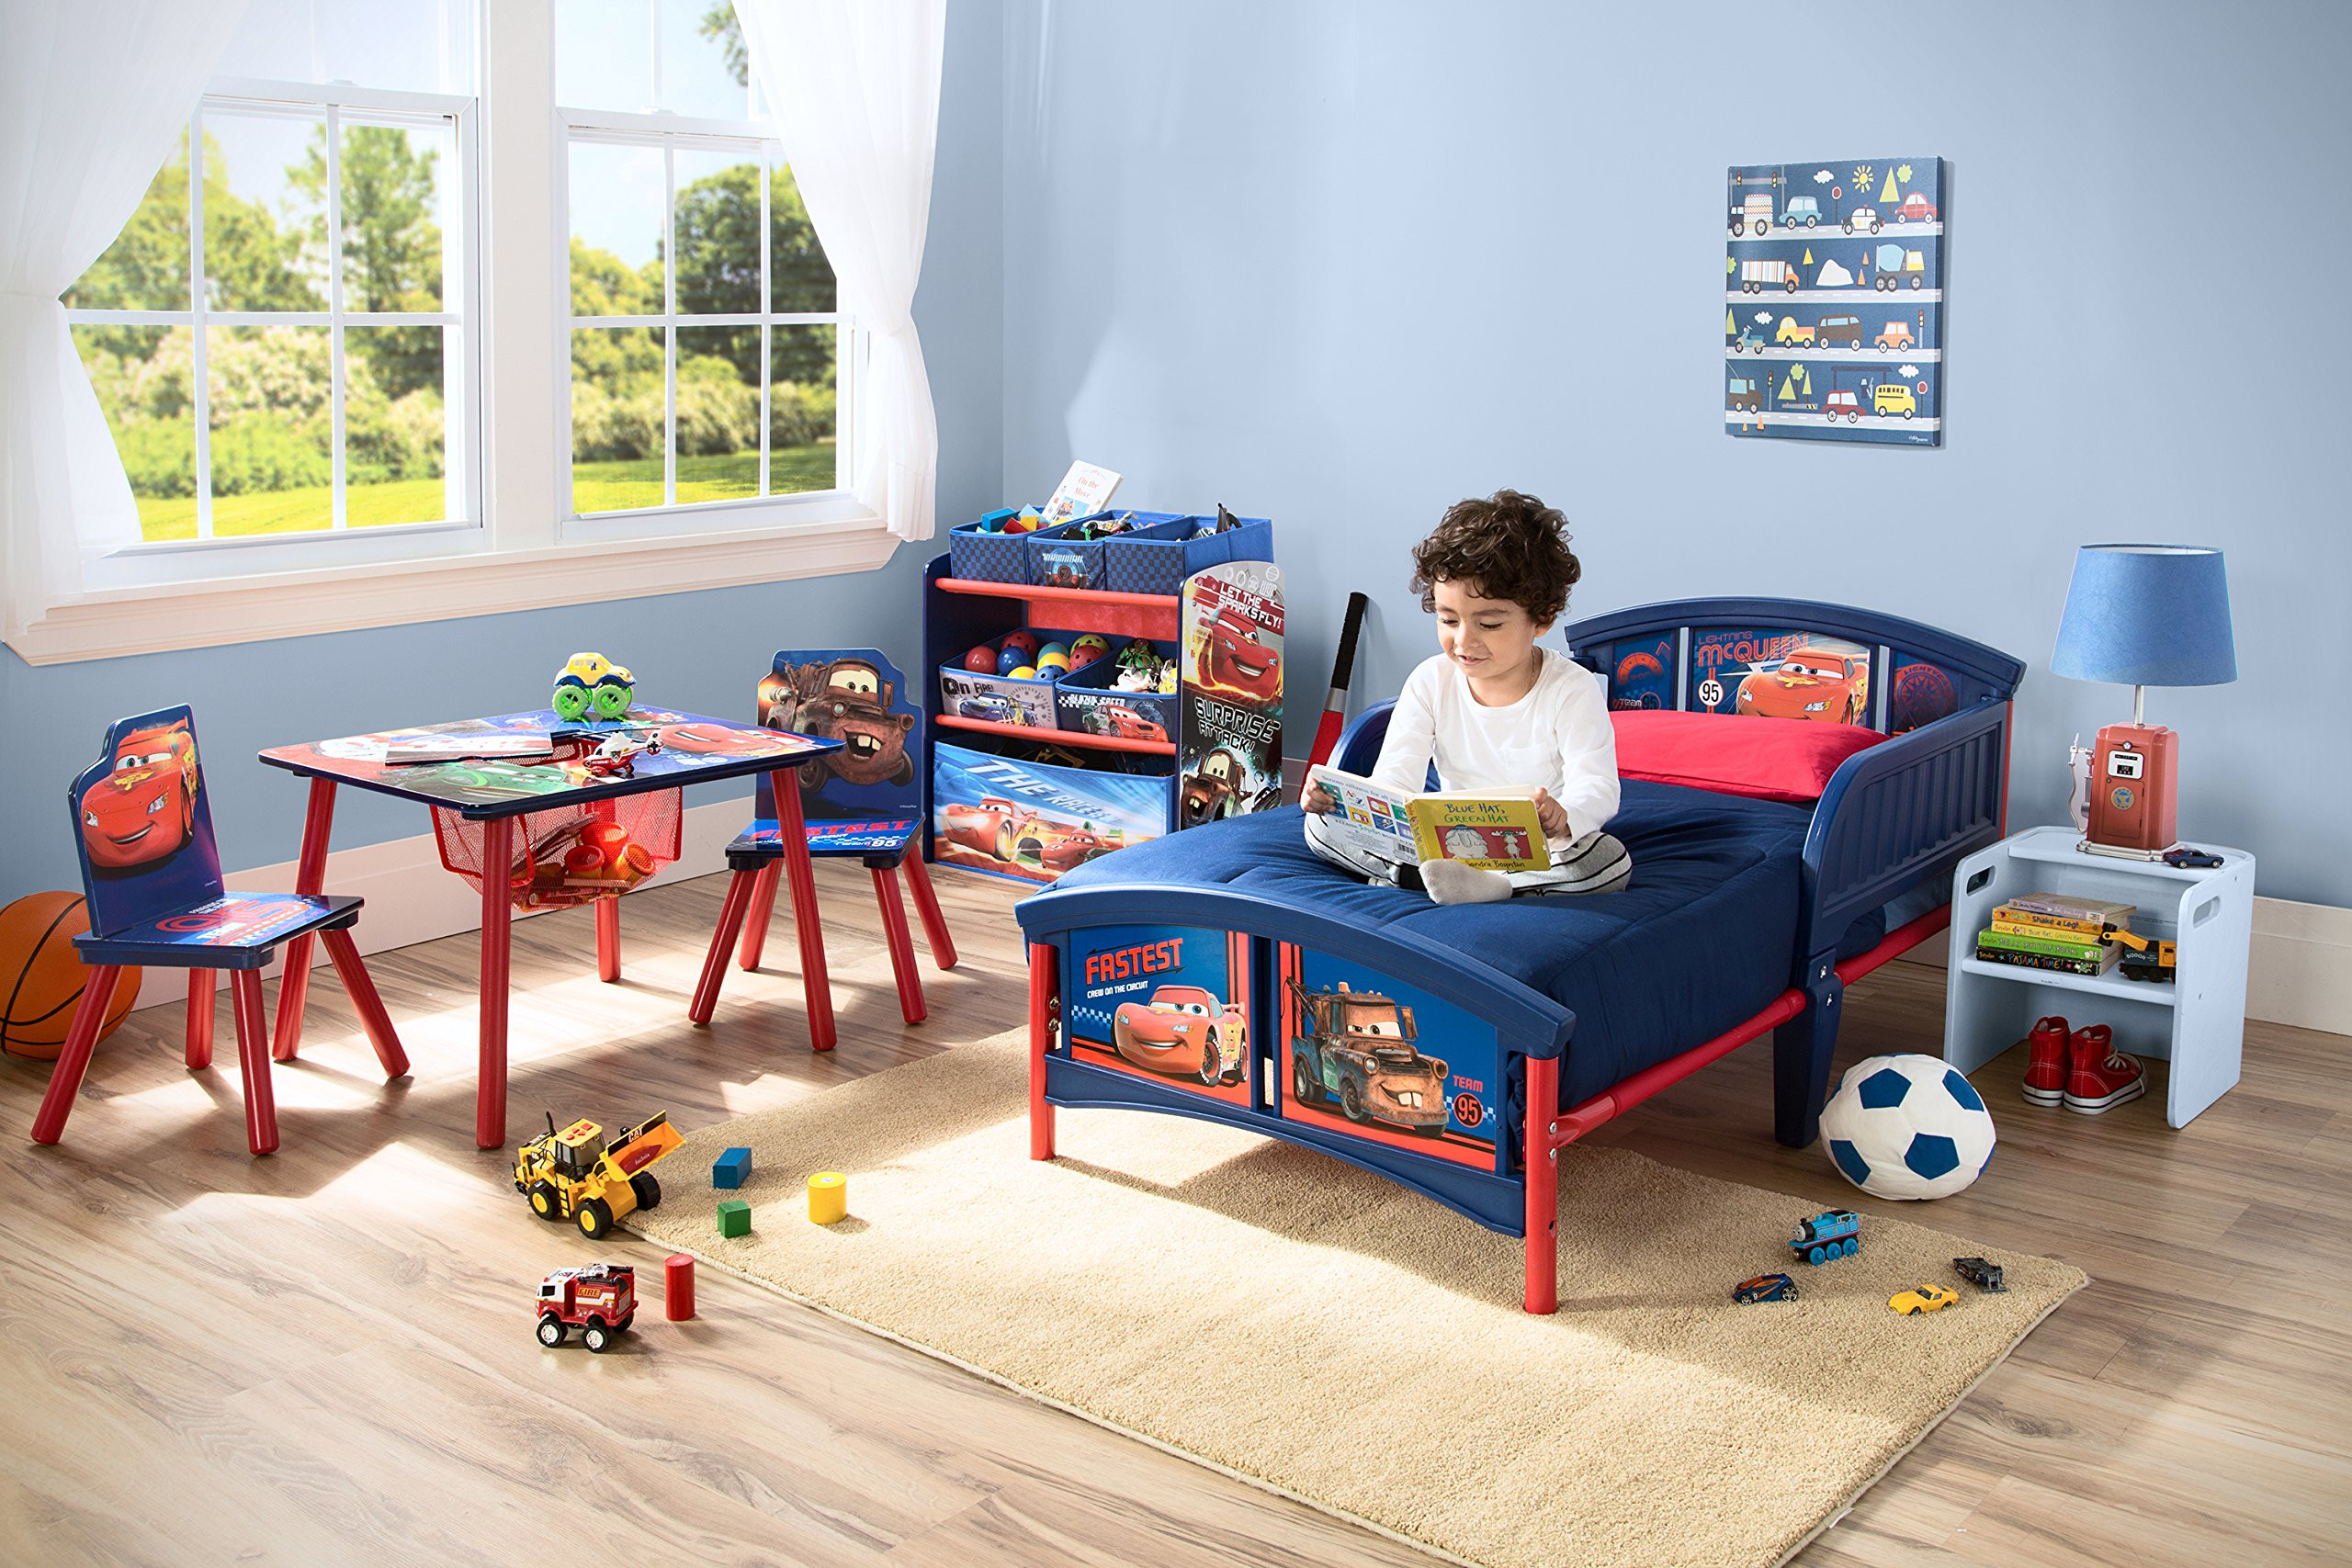 Toddler Bedroom Sets For Boys
 Disney Cars Plastic Toddler Bed Kids Bedroom Furniture